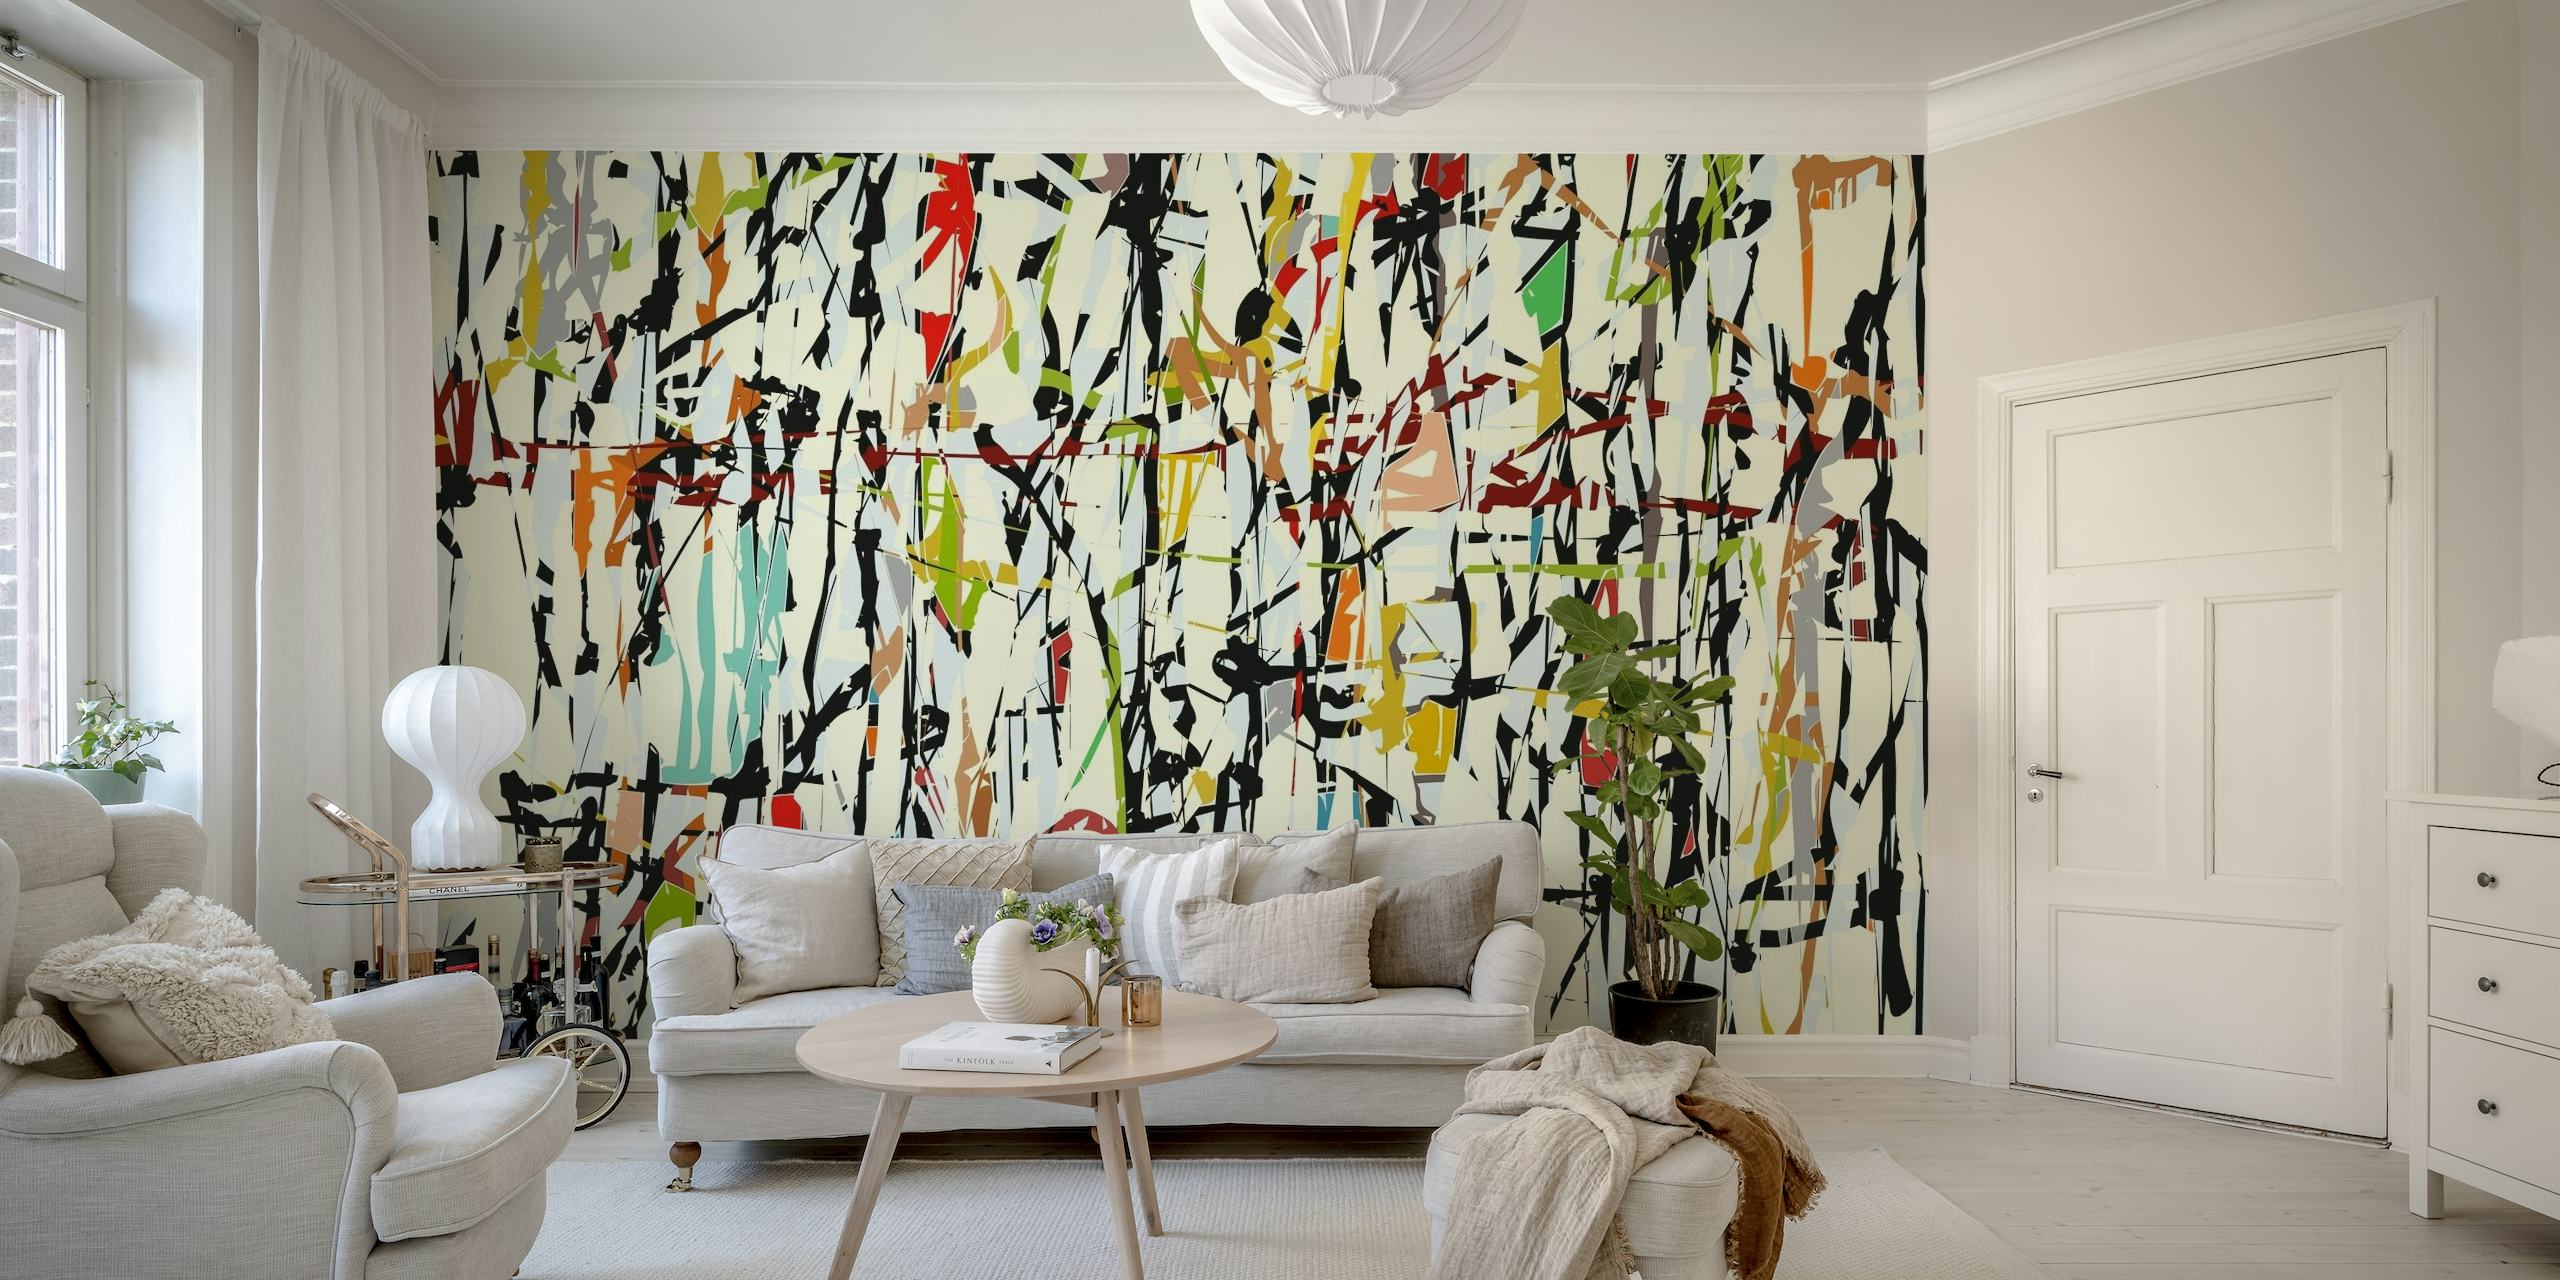 Pollock Wink 4 behang